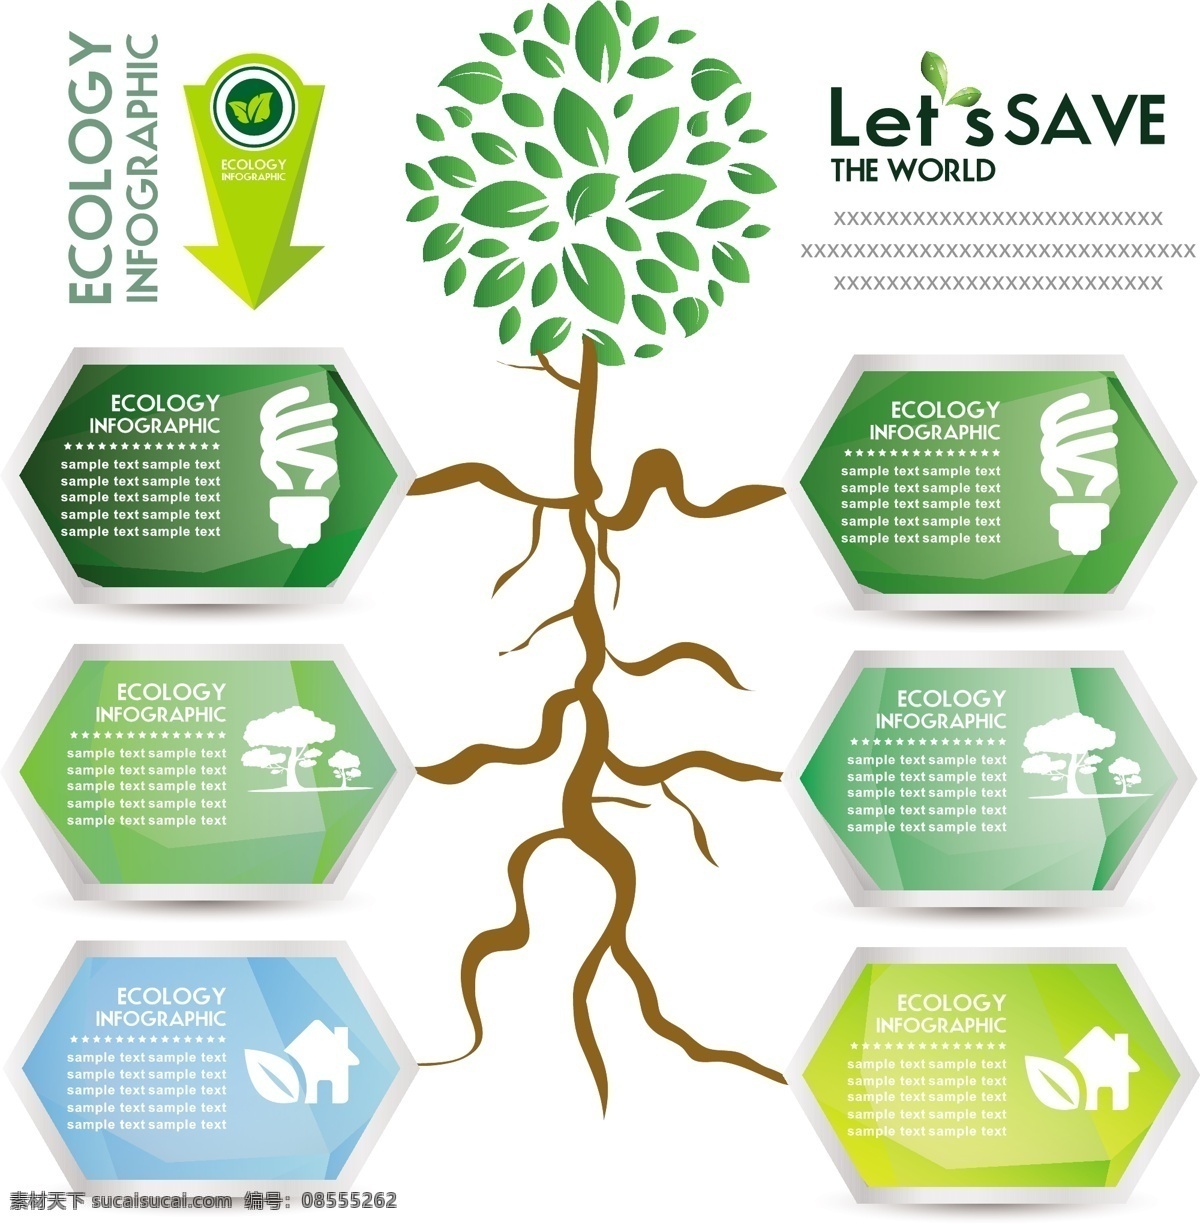 生态信息 环保 创意设计 eco 绿色 树木 绿叶 目录 循环 能源 节能 低碳 生态 回收 环保标志 ppt素材 底纹背景 商务金融 商业插画 白色